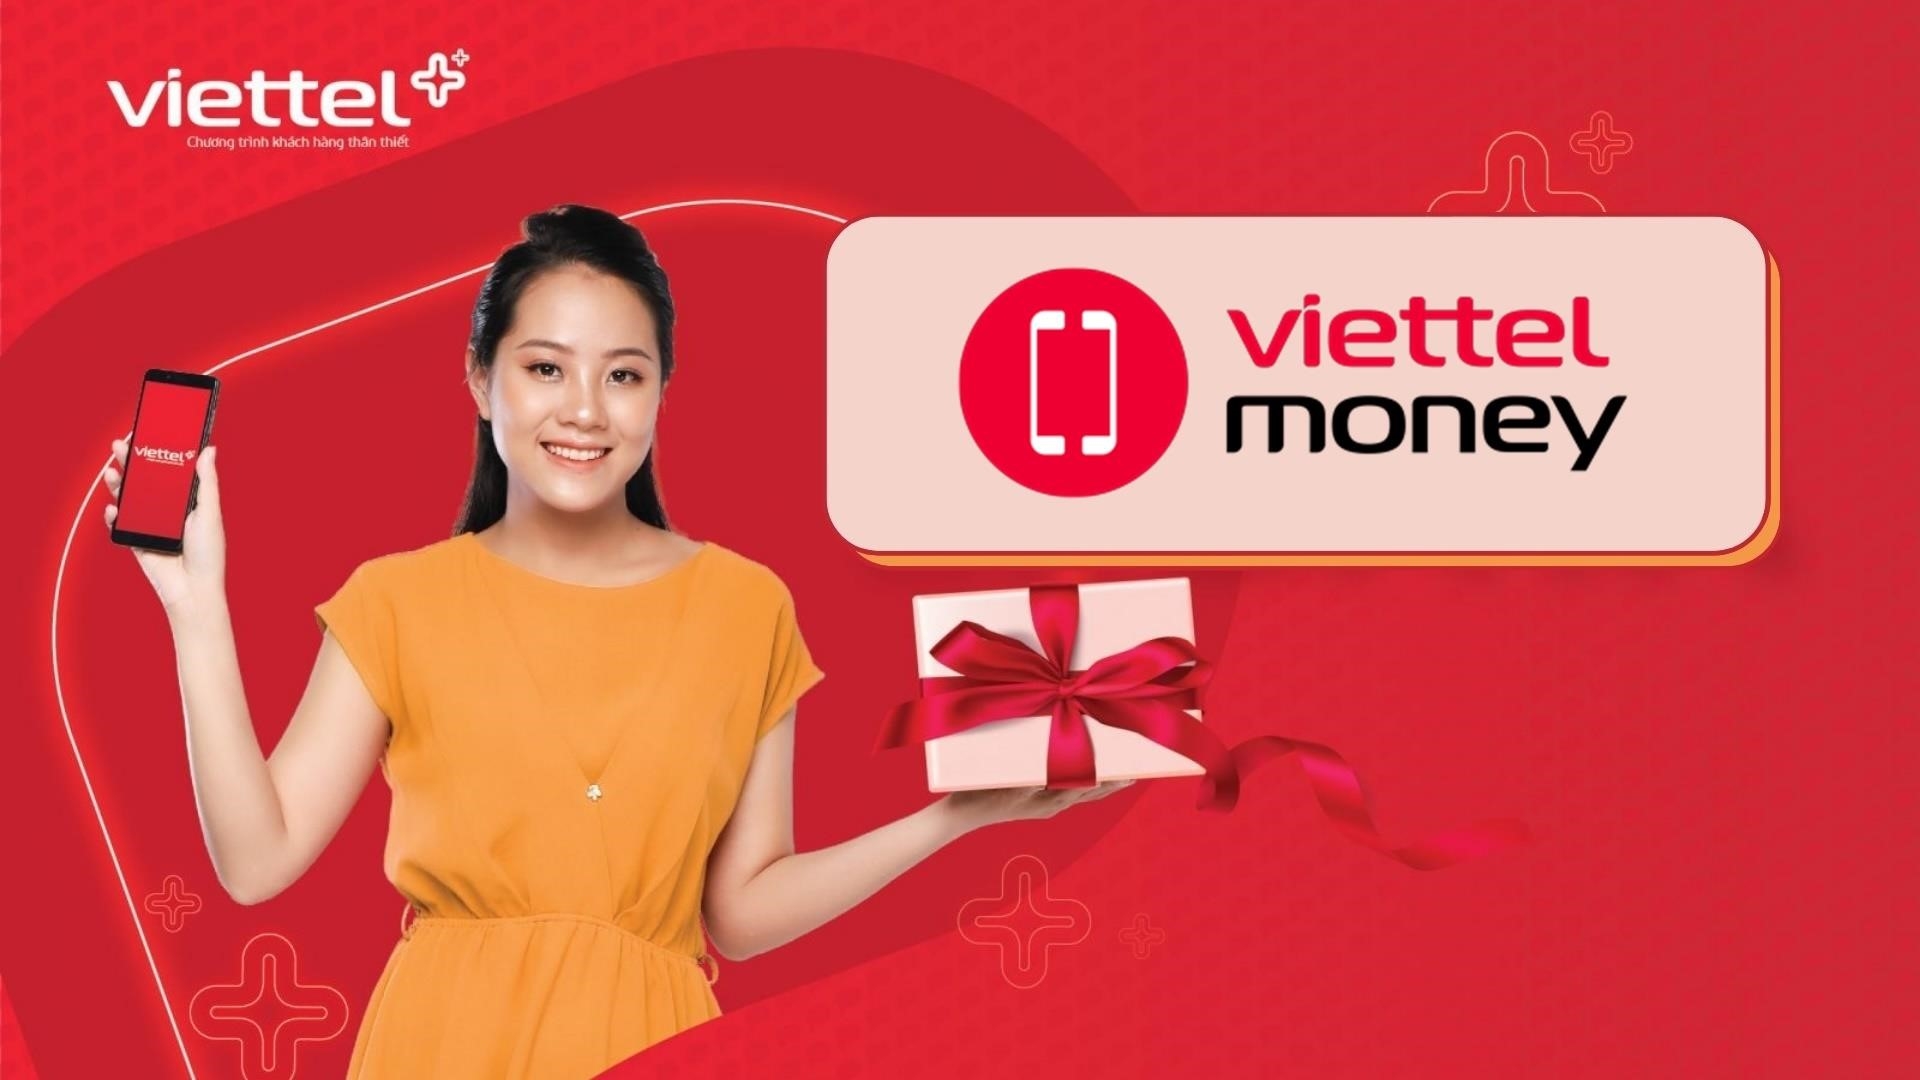 Gói 3 Viettel Money là một dịch vụ do Viettel cung cấp, cho phép người dùng thực hiện các giao dịch tài chính như chuyển tiền, thanh toán hóa đơn, nạp tiền điện thoại và mua vé xem phim một cách tiện lợi và an toàn.